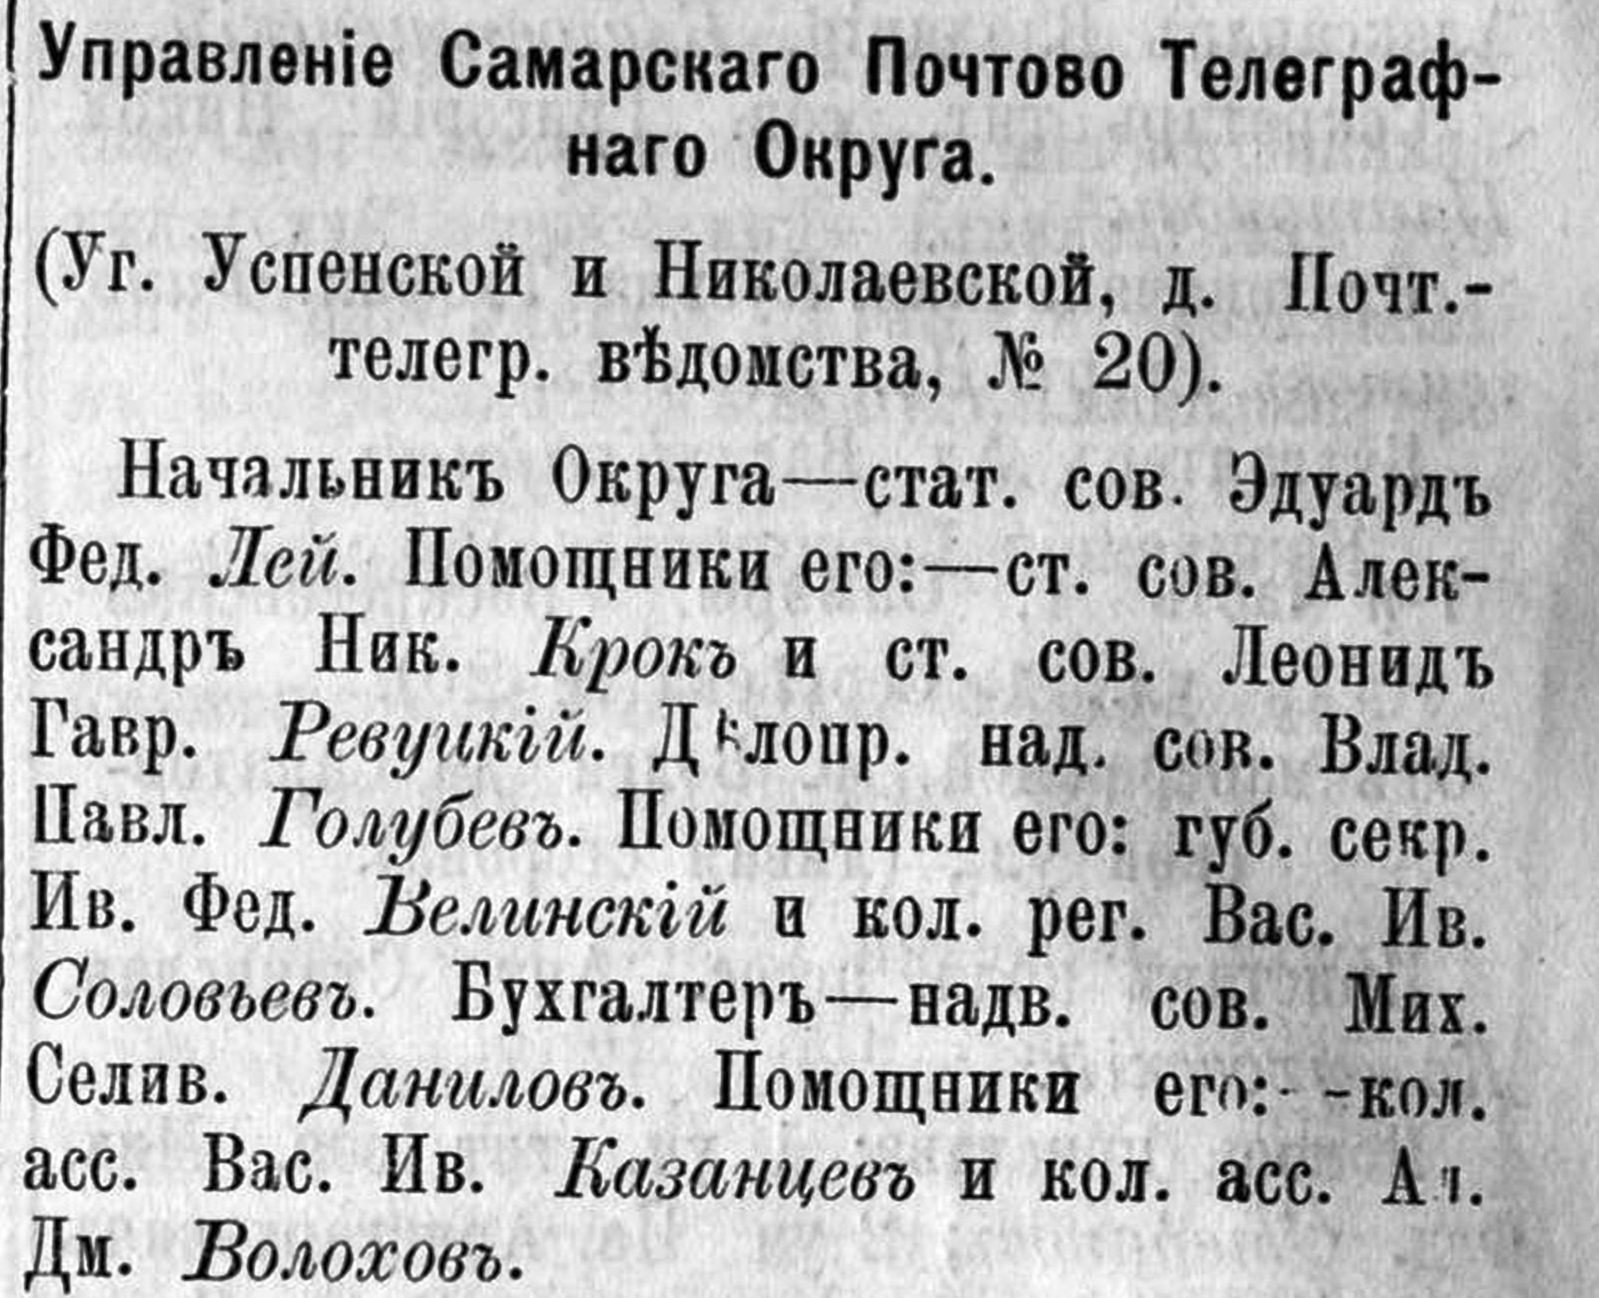 Чапаевская 20 в 1900 году